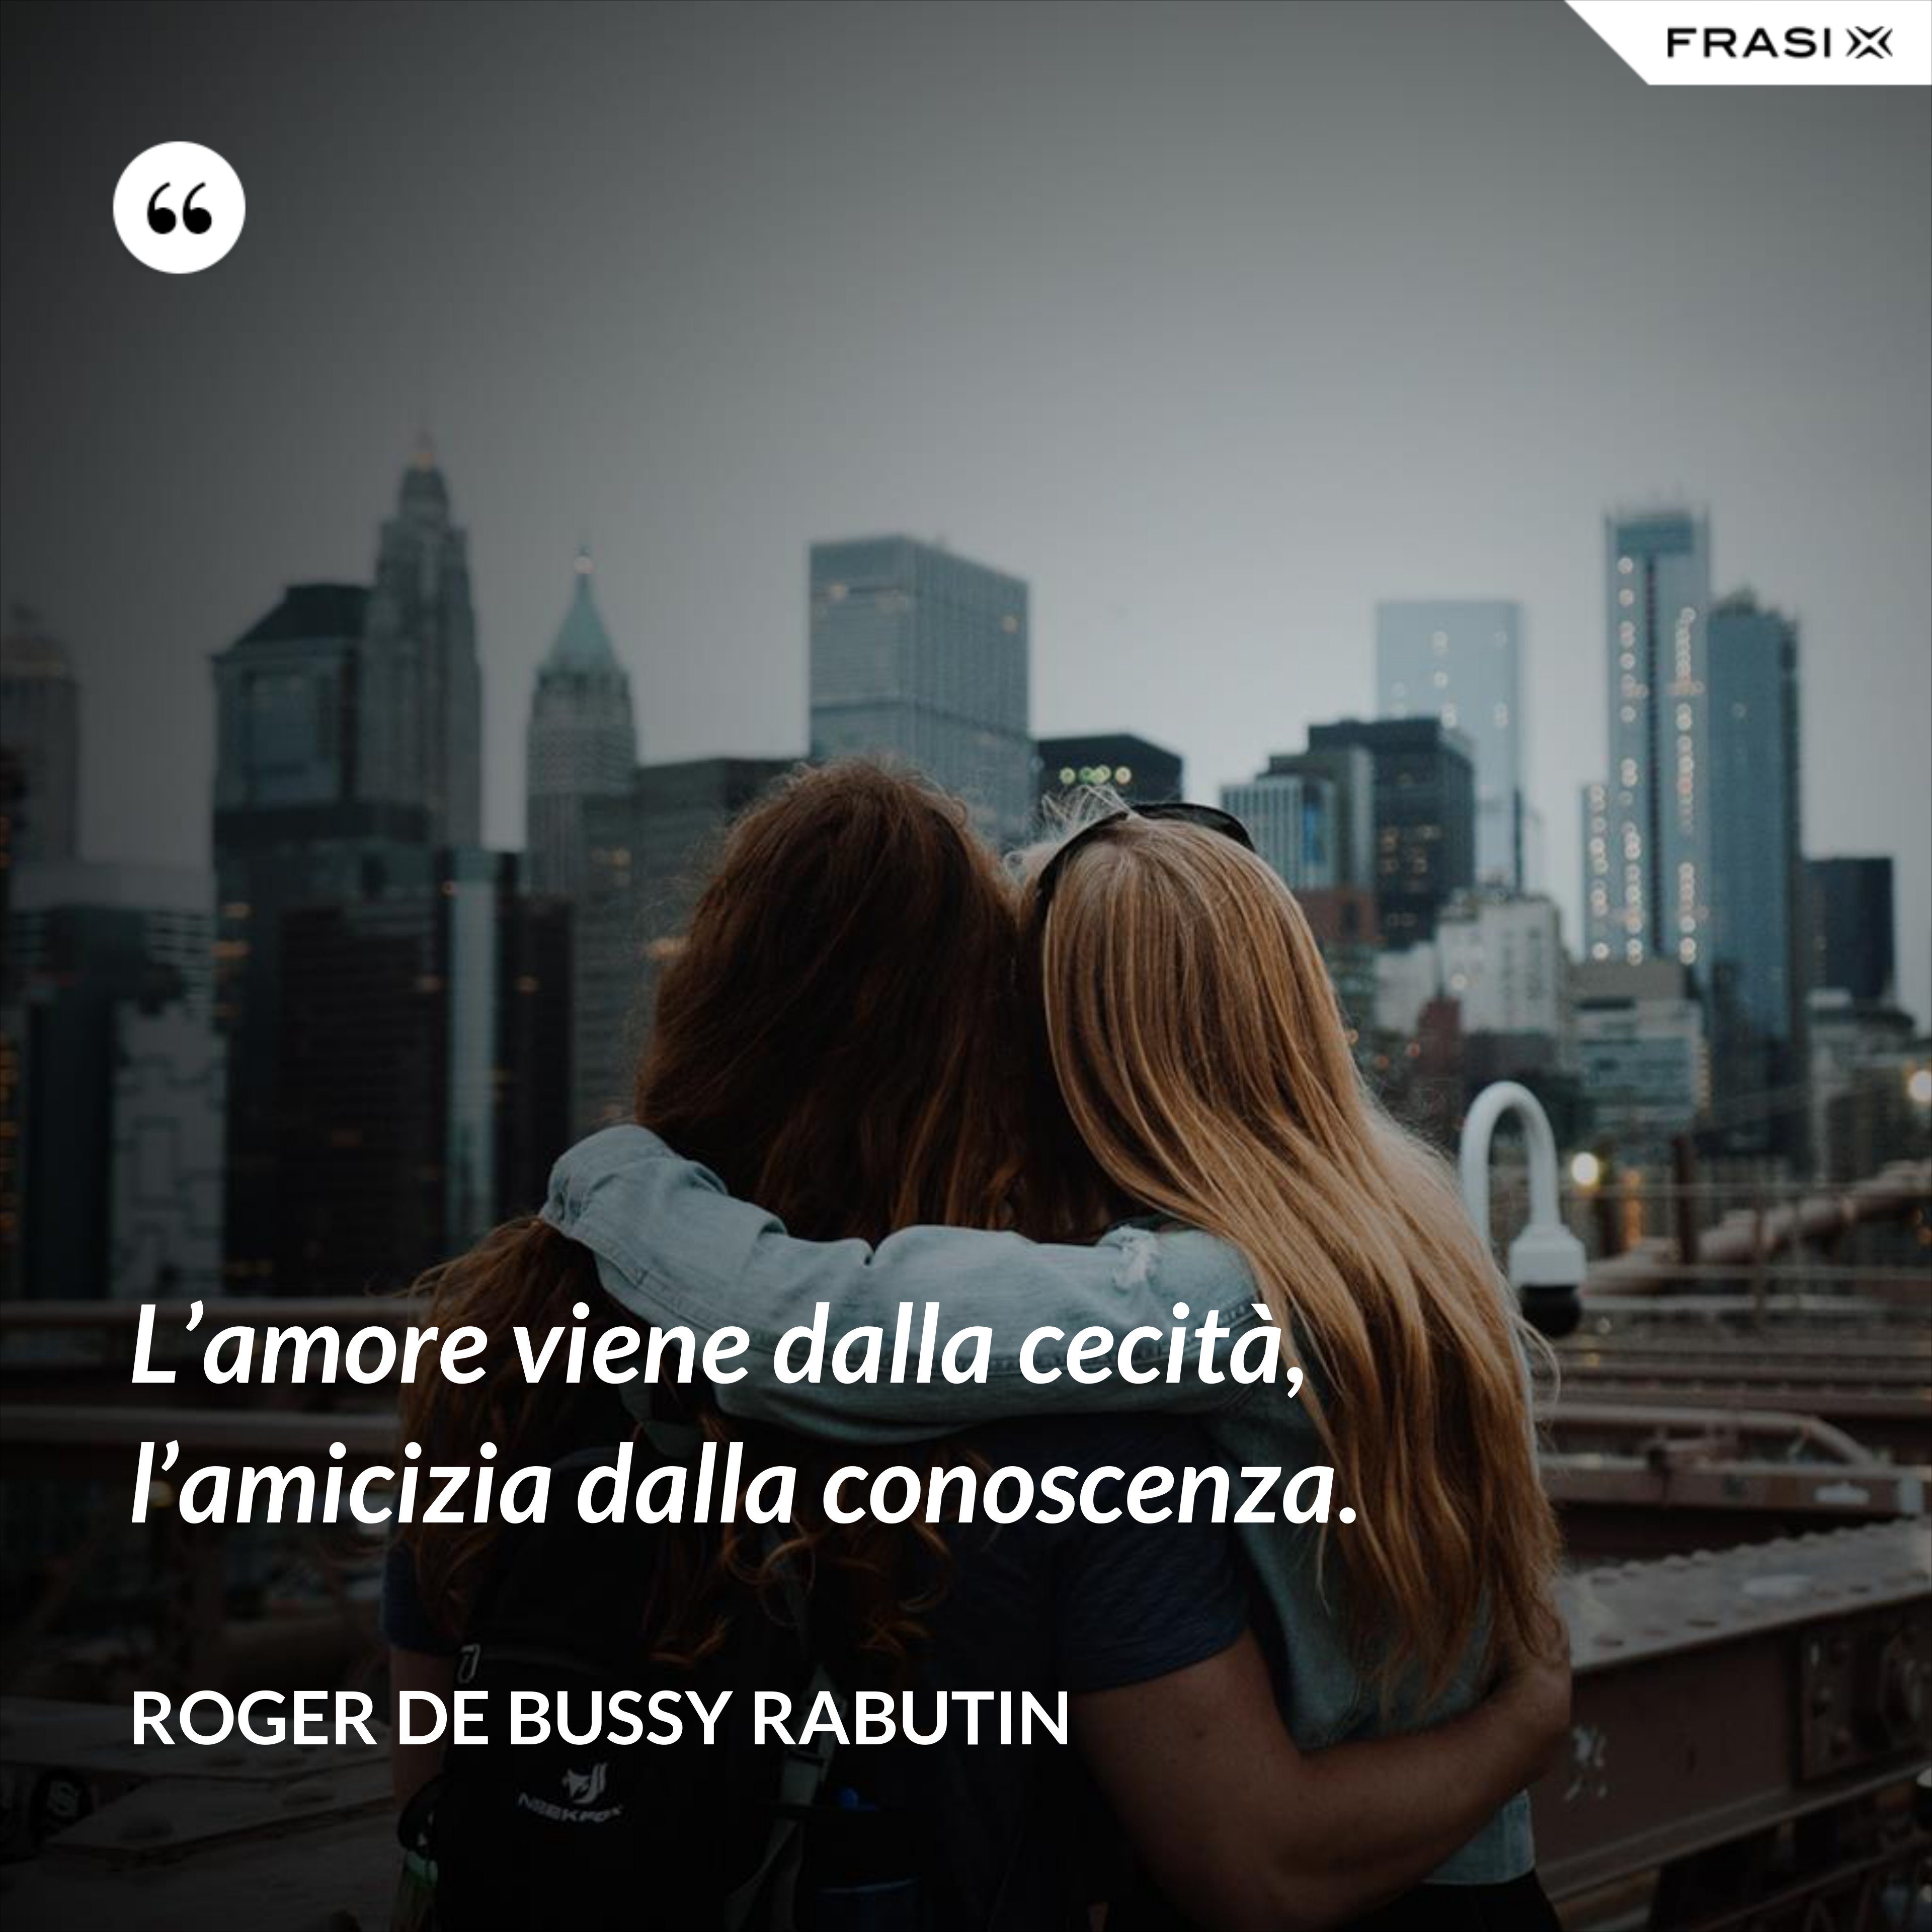 L’amore viene dalla cecità, l’amicizia dalla conoscenza. - Roger De Bussy Rabutin